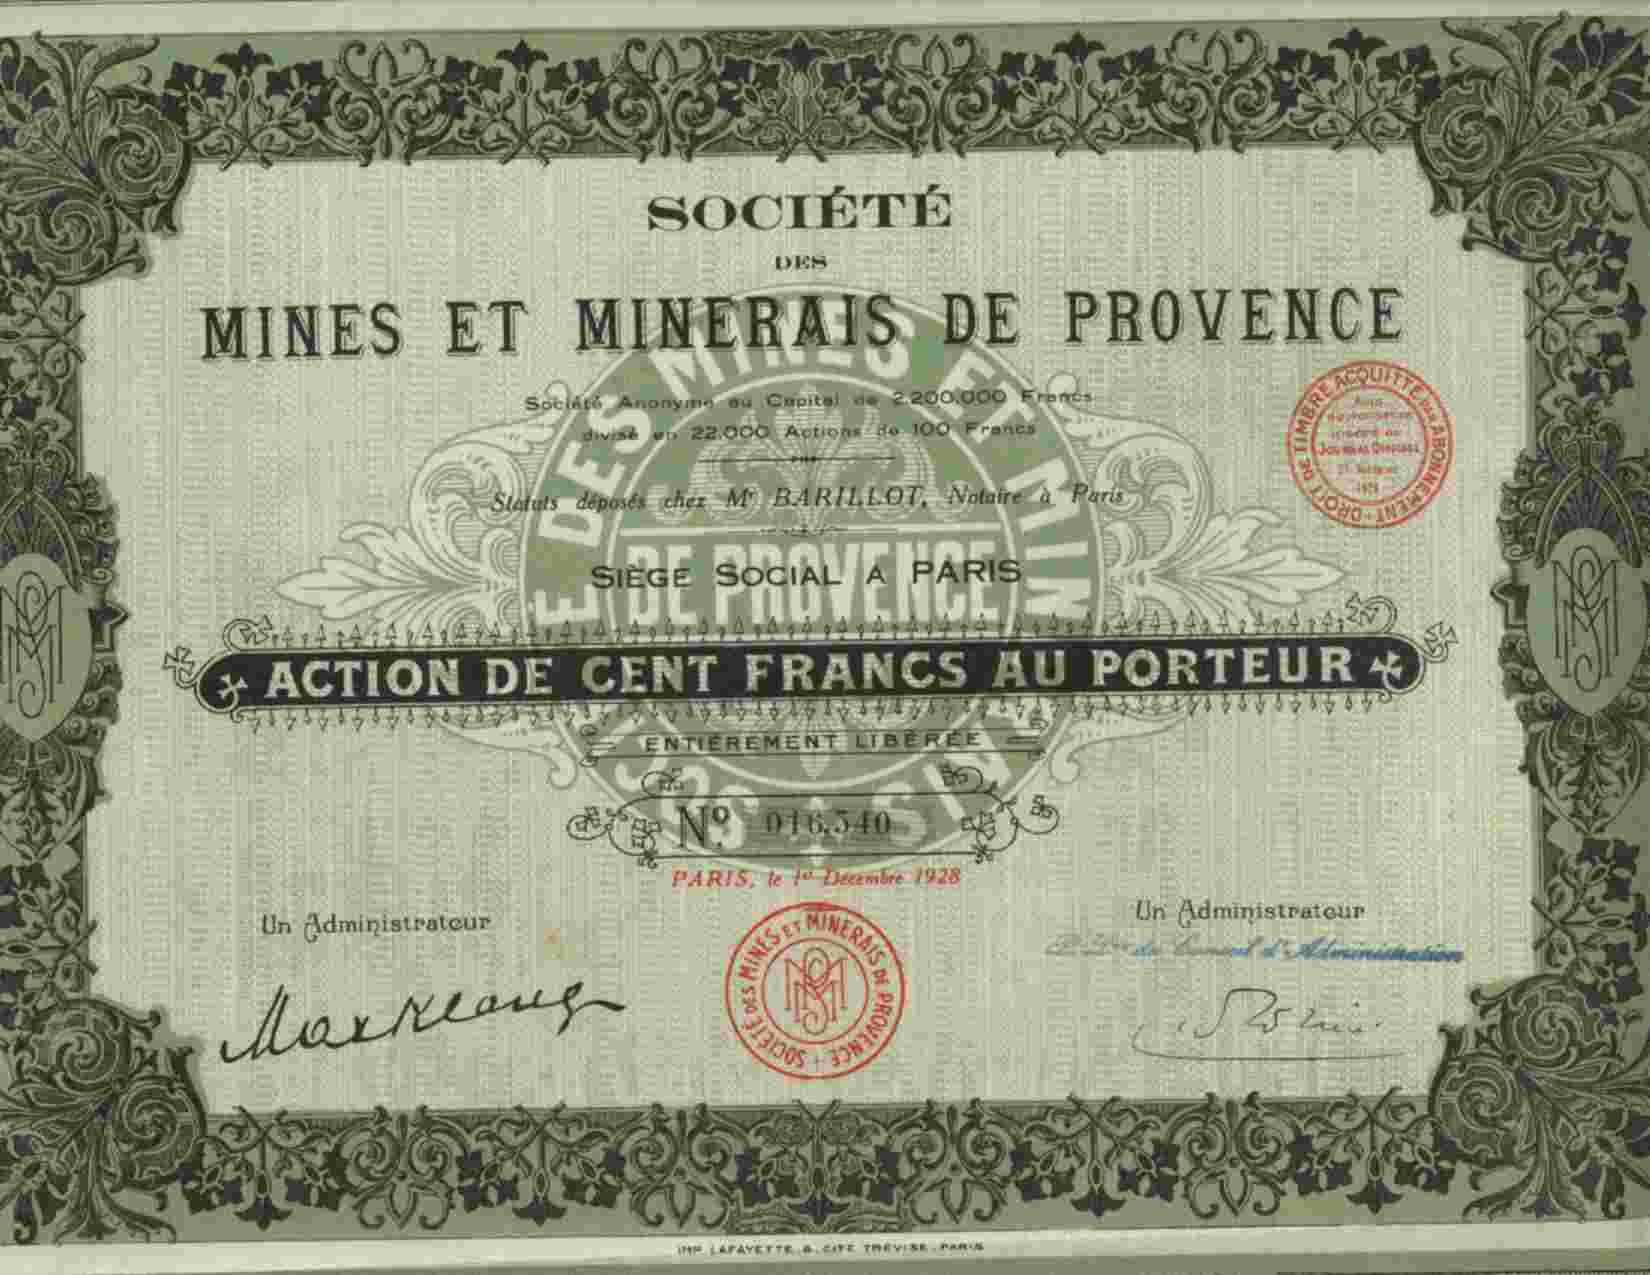 SOCIETE DES MINES ET MINERAIS DE PROVENCE - Mijnen